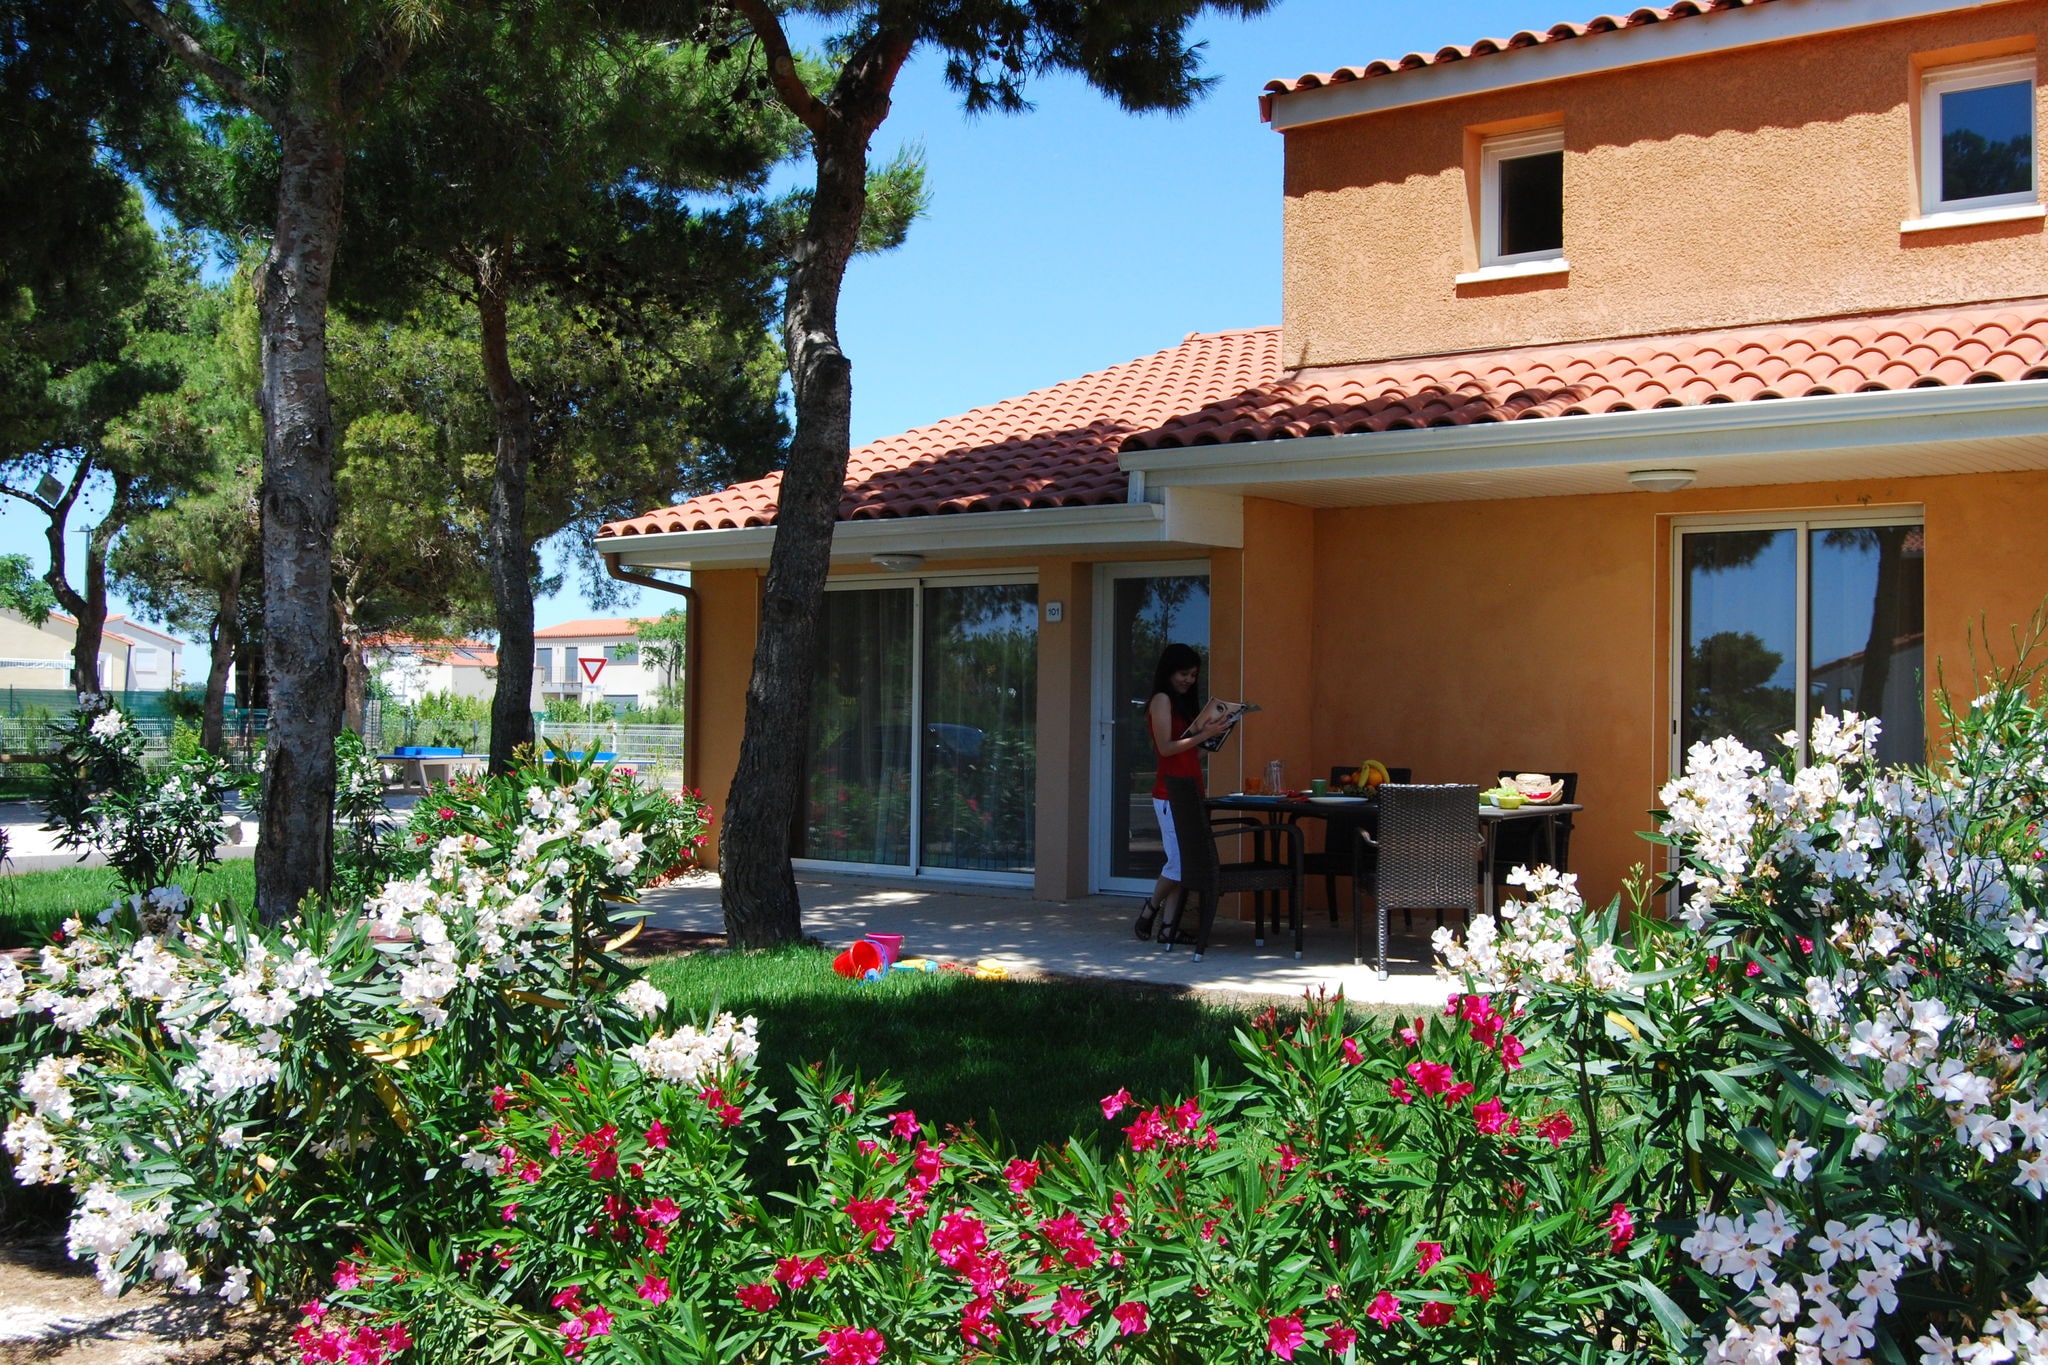 Buntes Ferienhaus mit Garten im mediterranen Stil